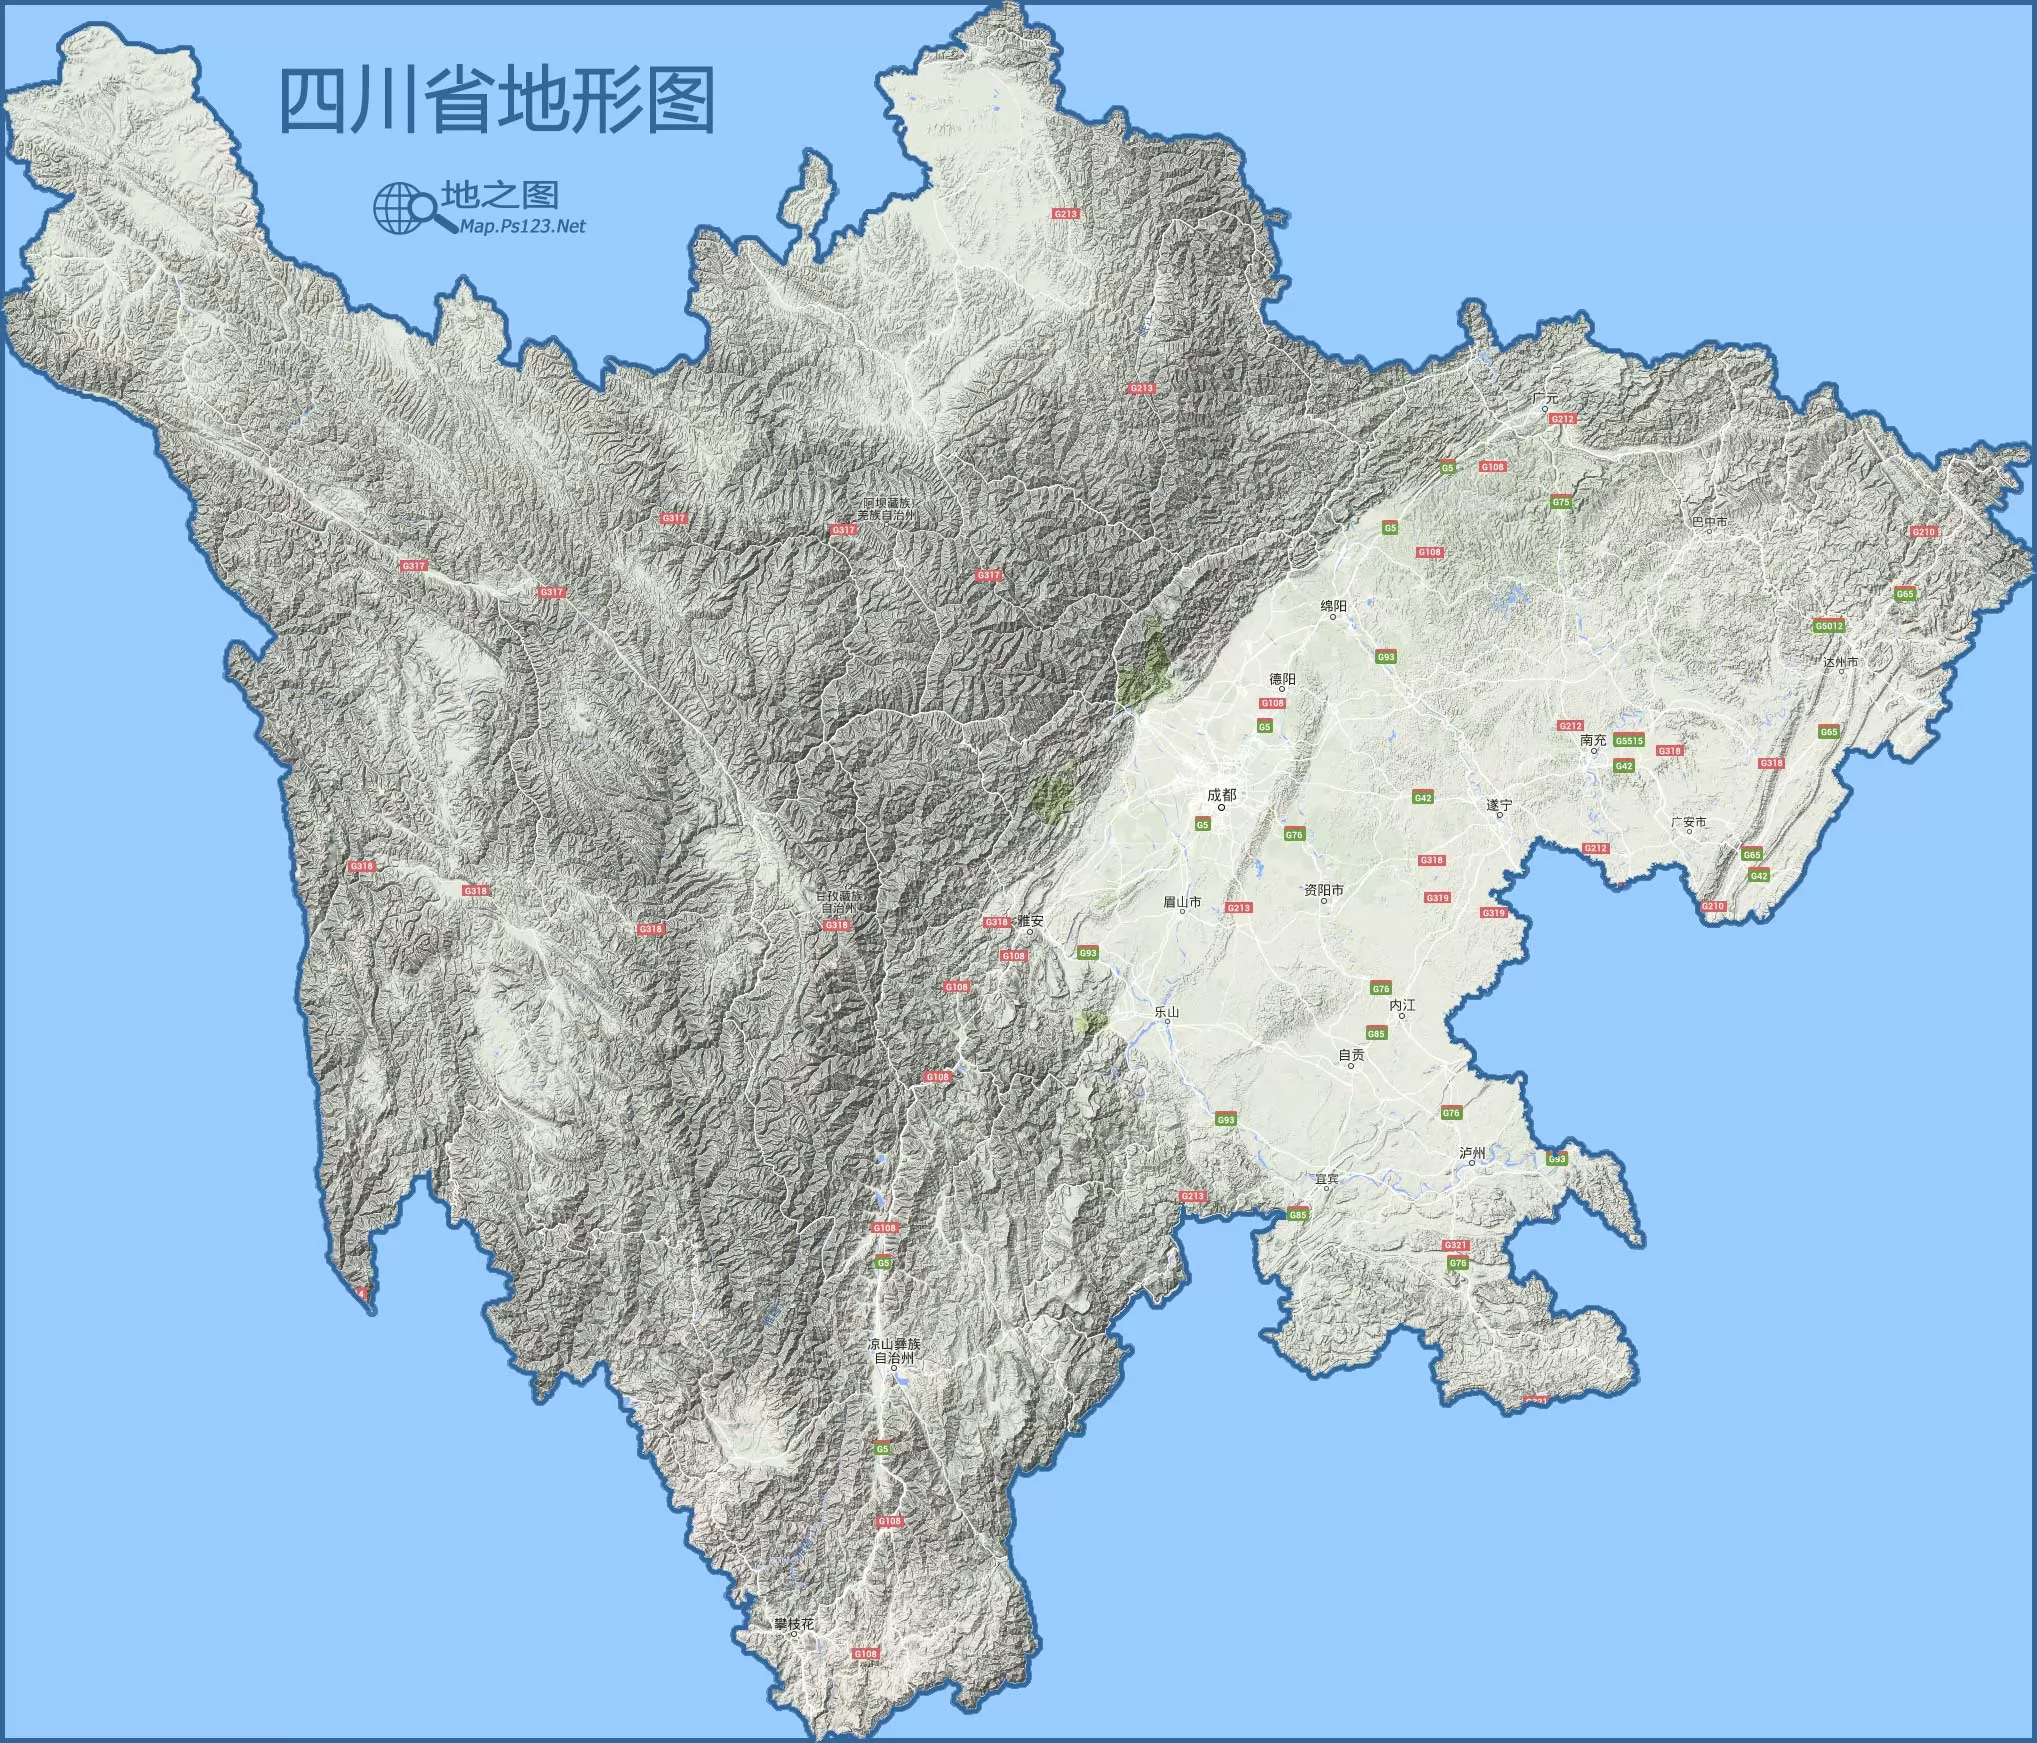 四川省地形图 - 中国地图全图 - 地理教师网